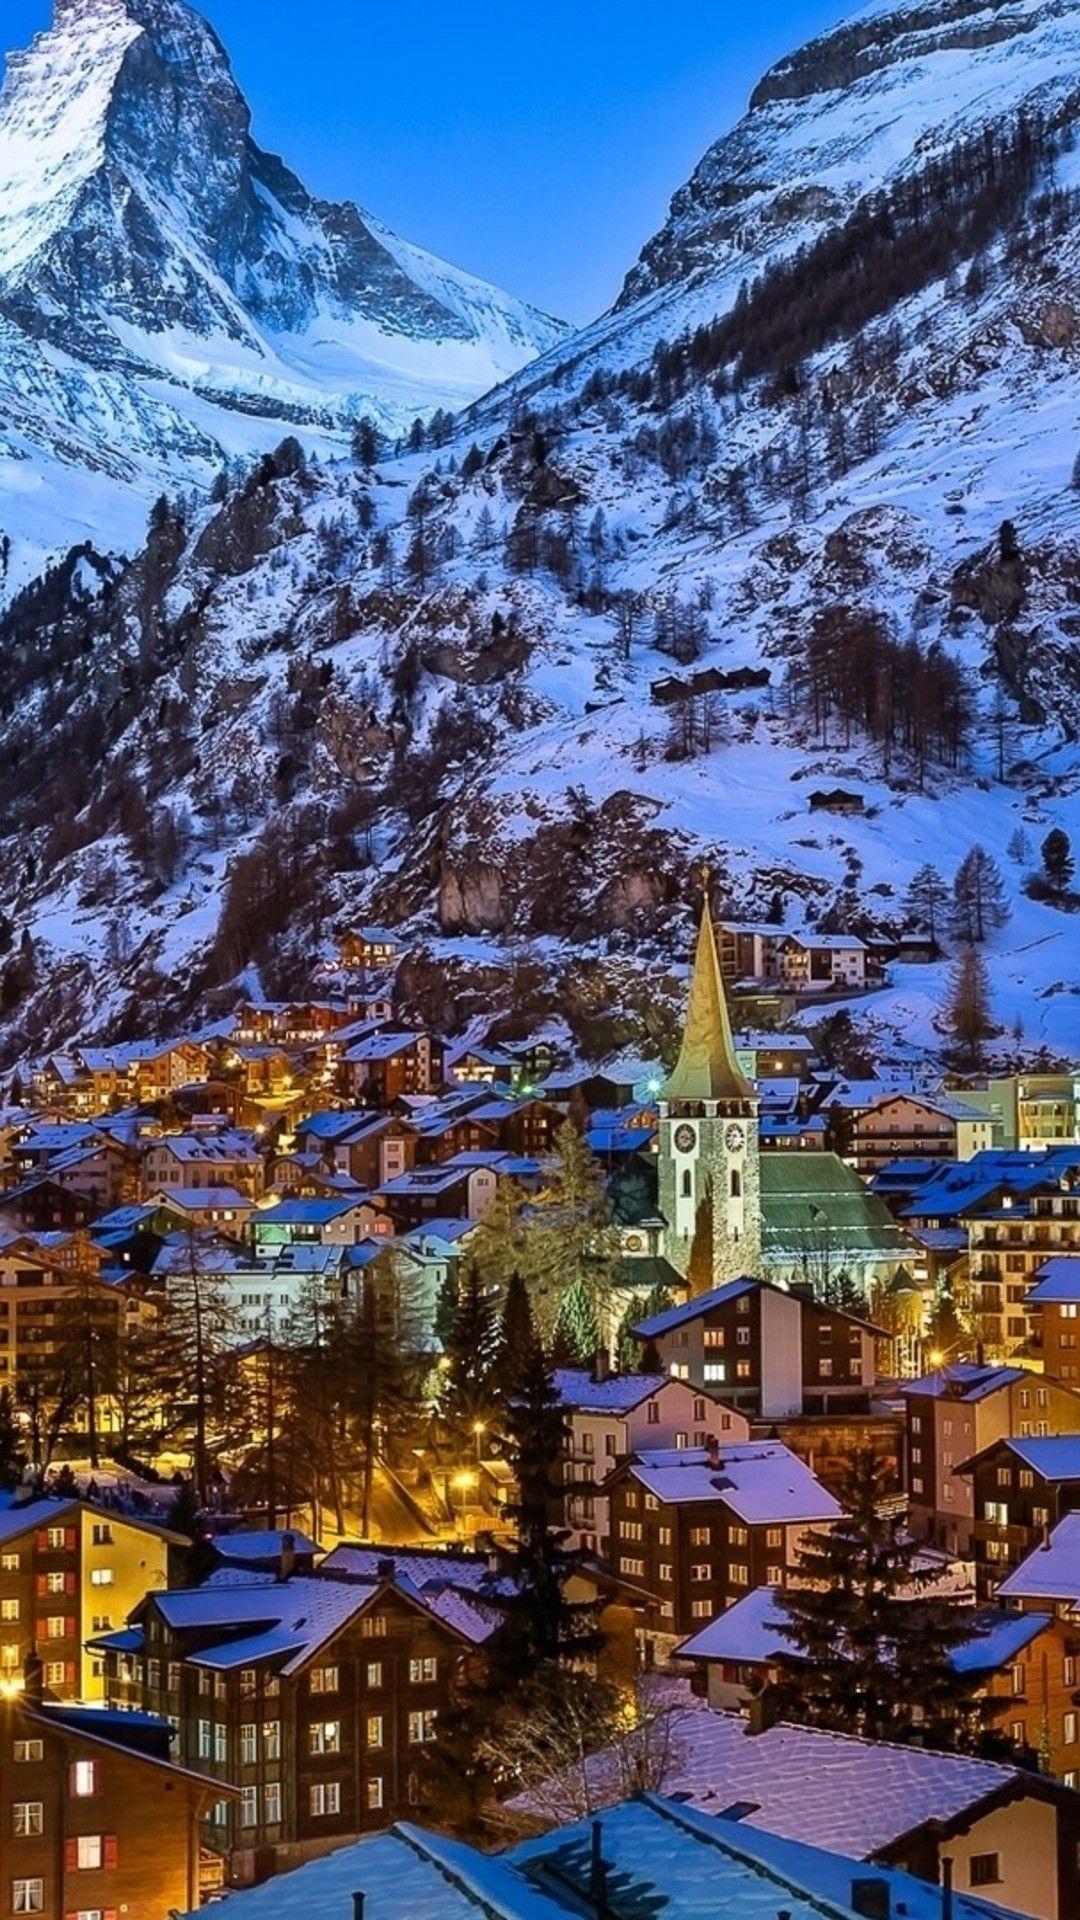 Thụy Sĩ được biết đến với những cảnh quan tuyệt đẹp, và bộ sưu tập hình nền Thụy Sĩ đẹp nhất miễn phí này sẽ đưa bạn đến những nơi thật tuyệt vời. Tận hưởng vẻ đẹp nguyên thủy và đậm chất của nơi đây, chỉ cần một cú click chuột là bạn đã đến với Thụy Sĩ.